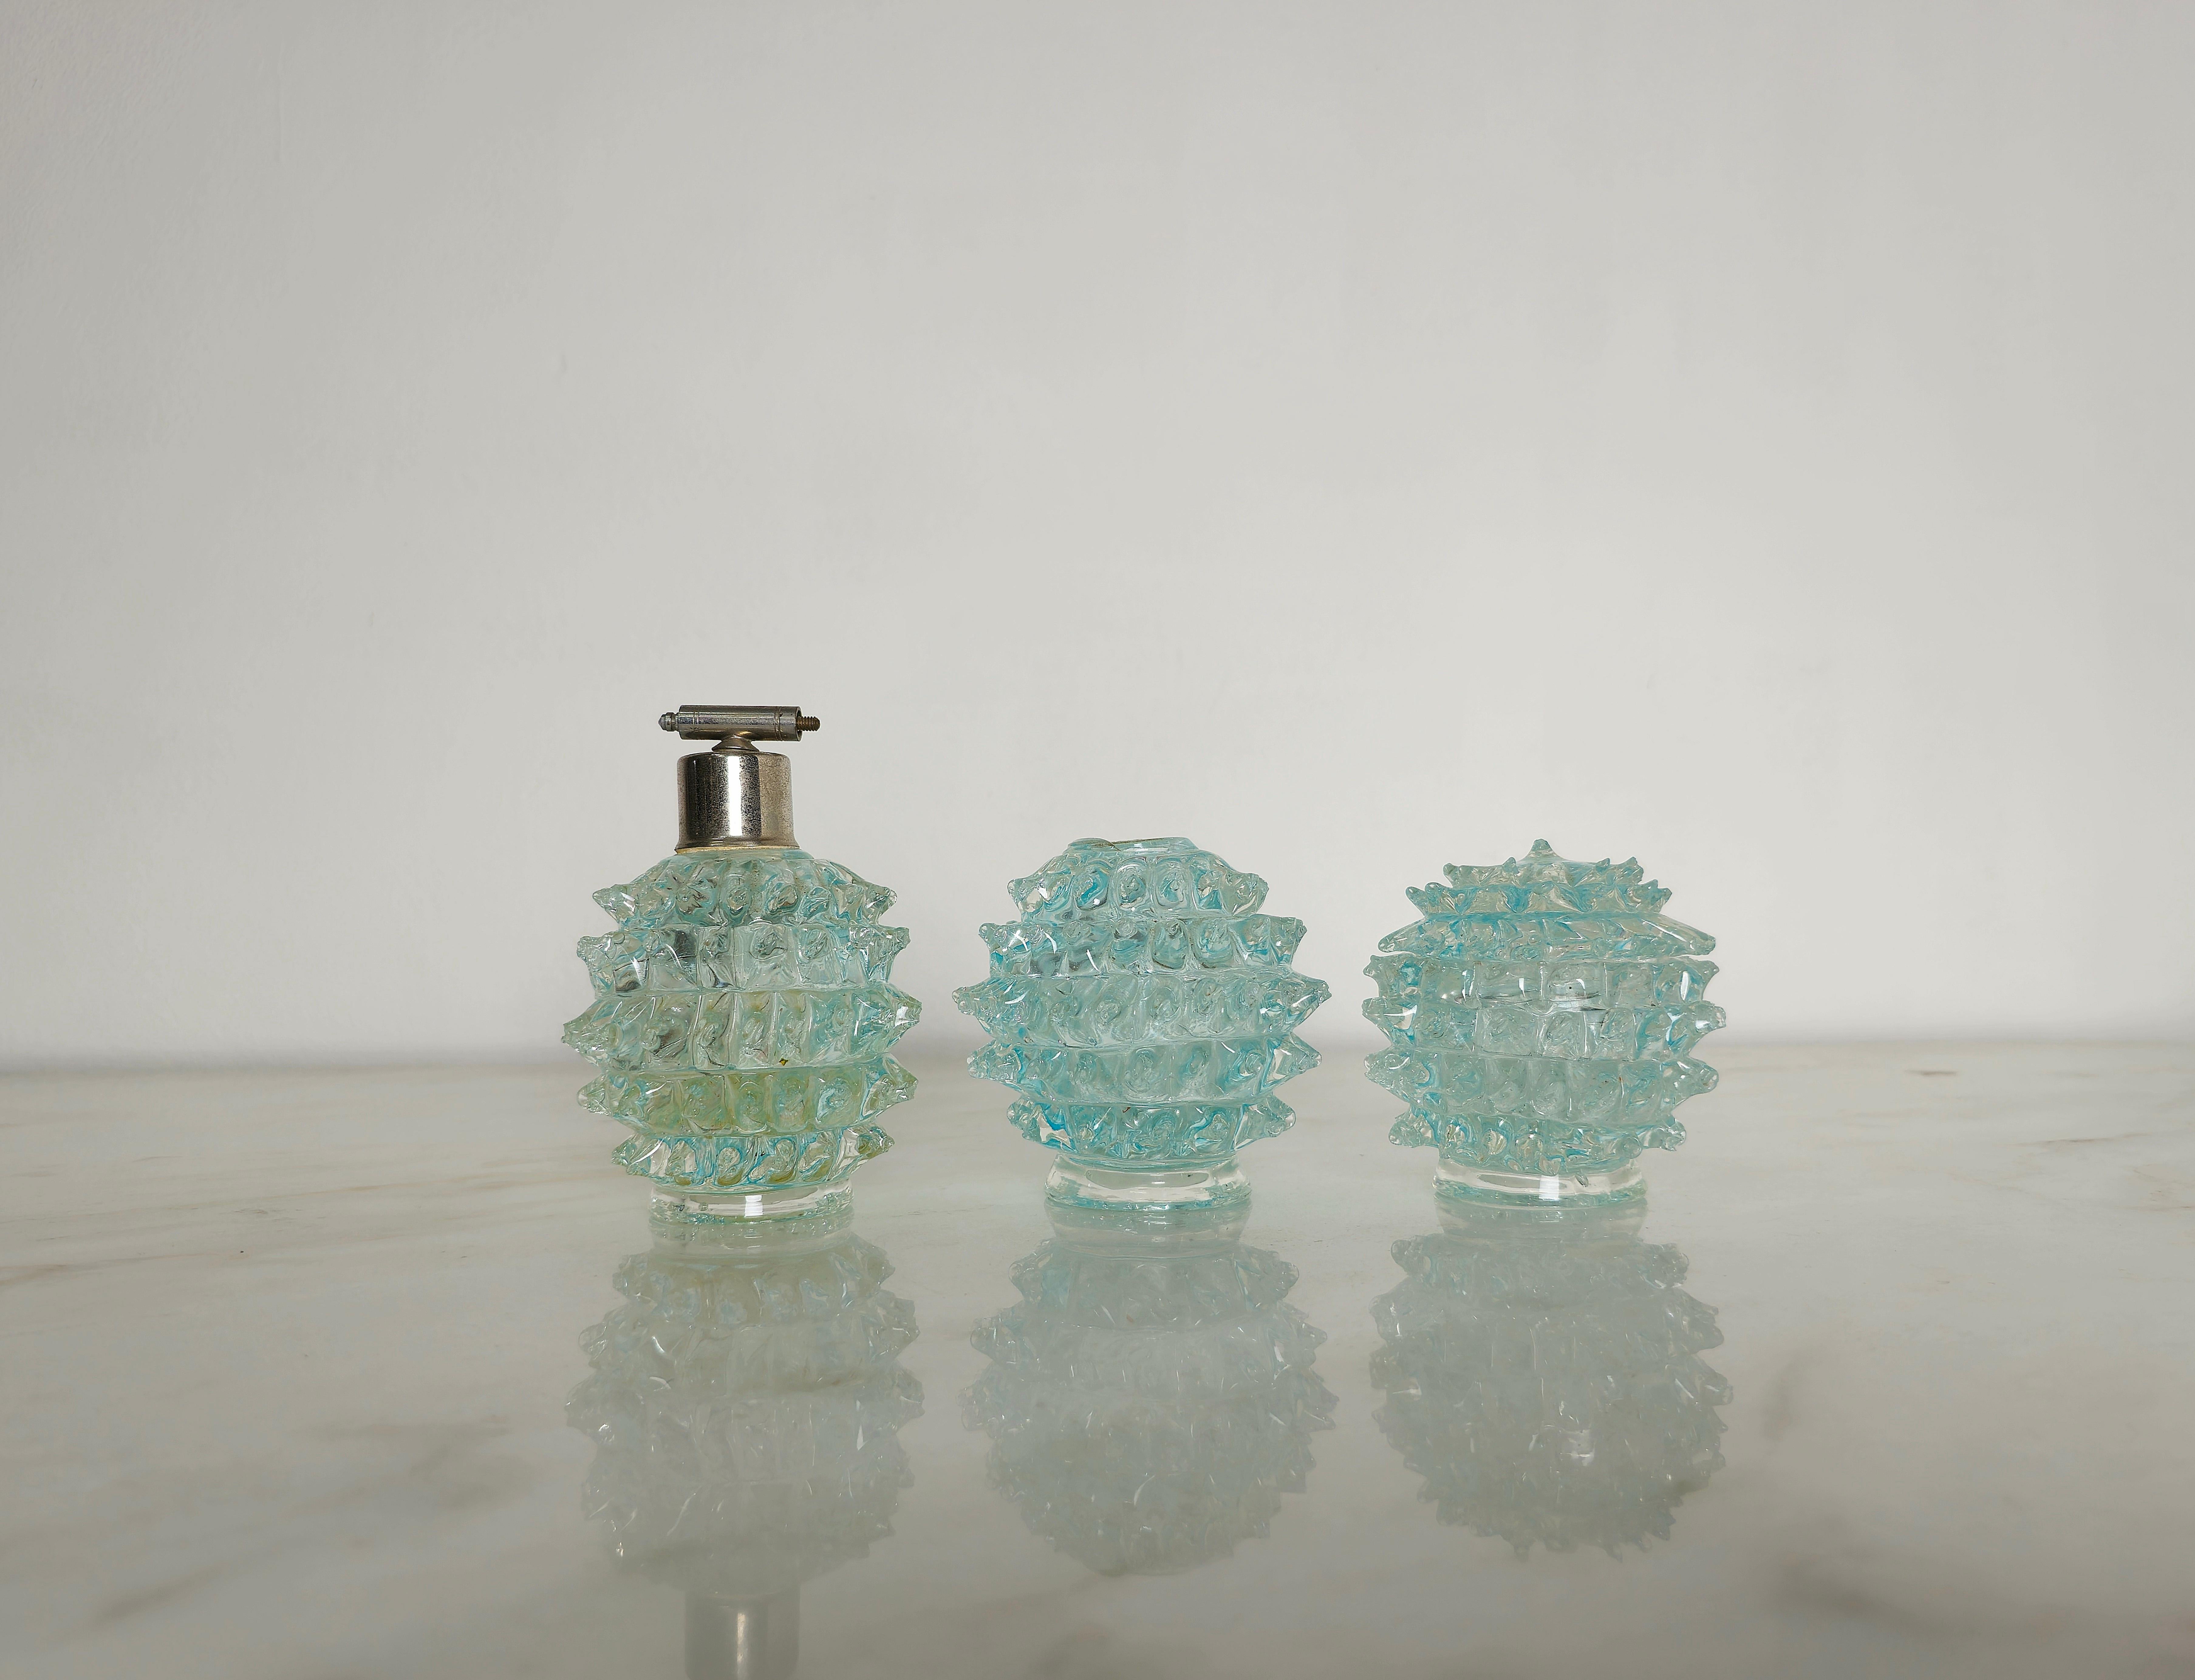 Set de 3 articles de toilette fabriqués dans les années 1940 par Barovier&Toso en verre de Murano rostré dans des tons transparents et bleu clair.
Nous tenons à préciser que cet ensemble n'est vendu que comme objet de décoration ou d'exposition car